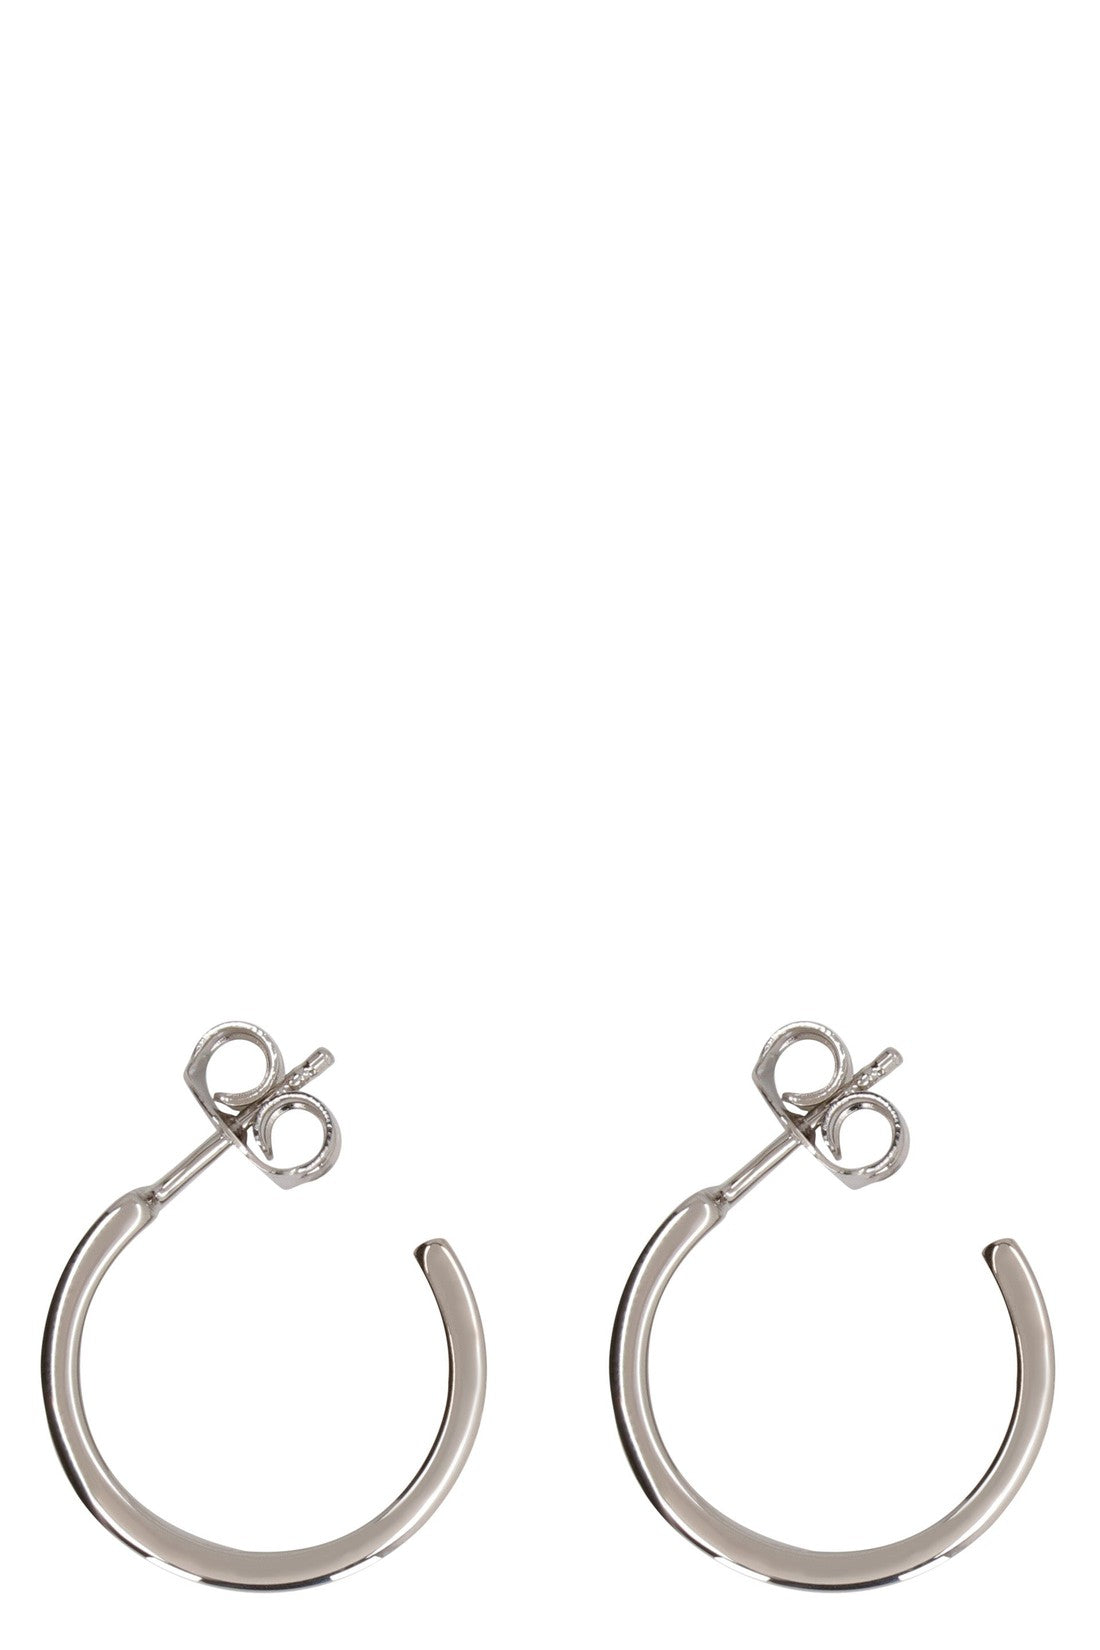 MM6 Maison Margiela-OUTLET-SALE-Logo hoop earrings-ARCHIVIST